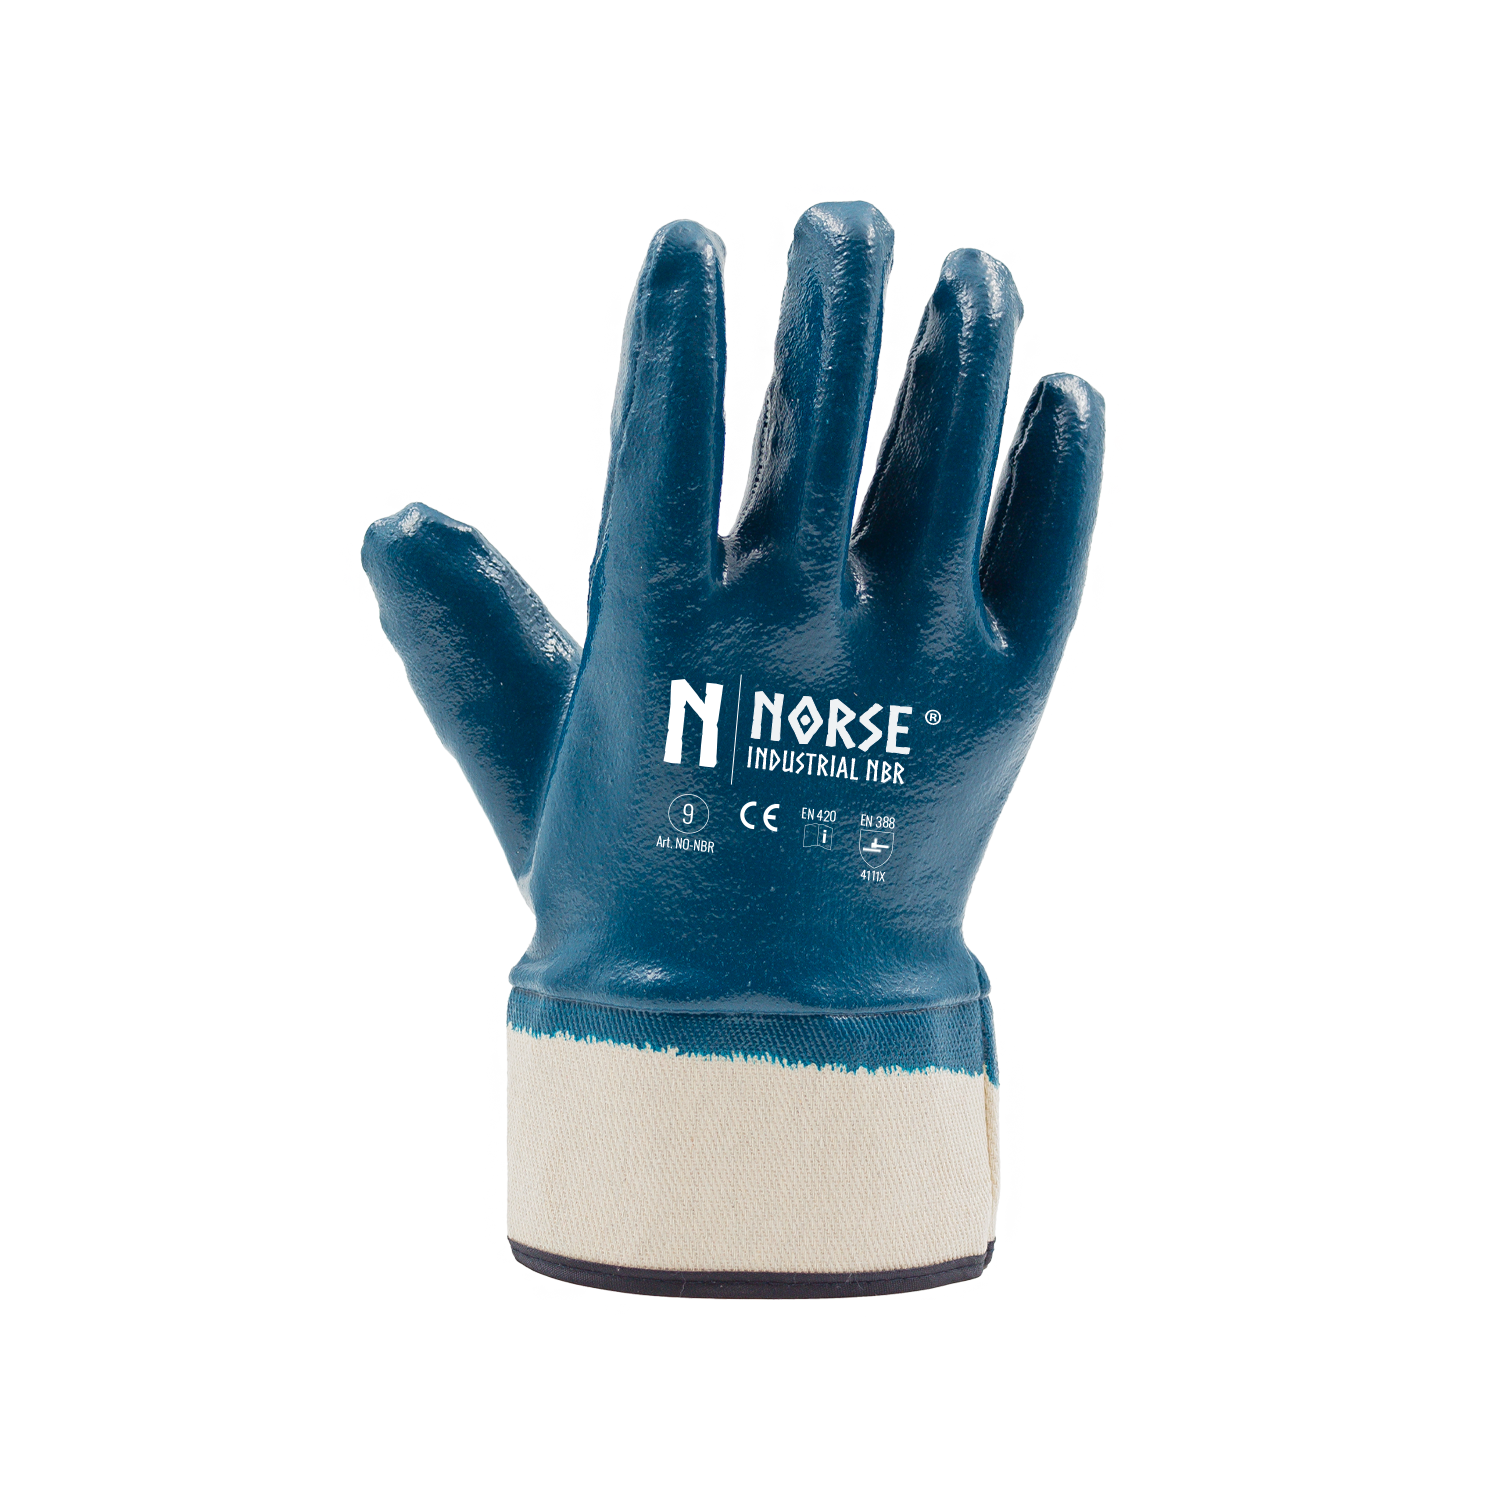 NORSE Industrial NBR Strapazierfähig Handschuhe Größe 9